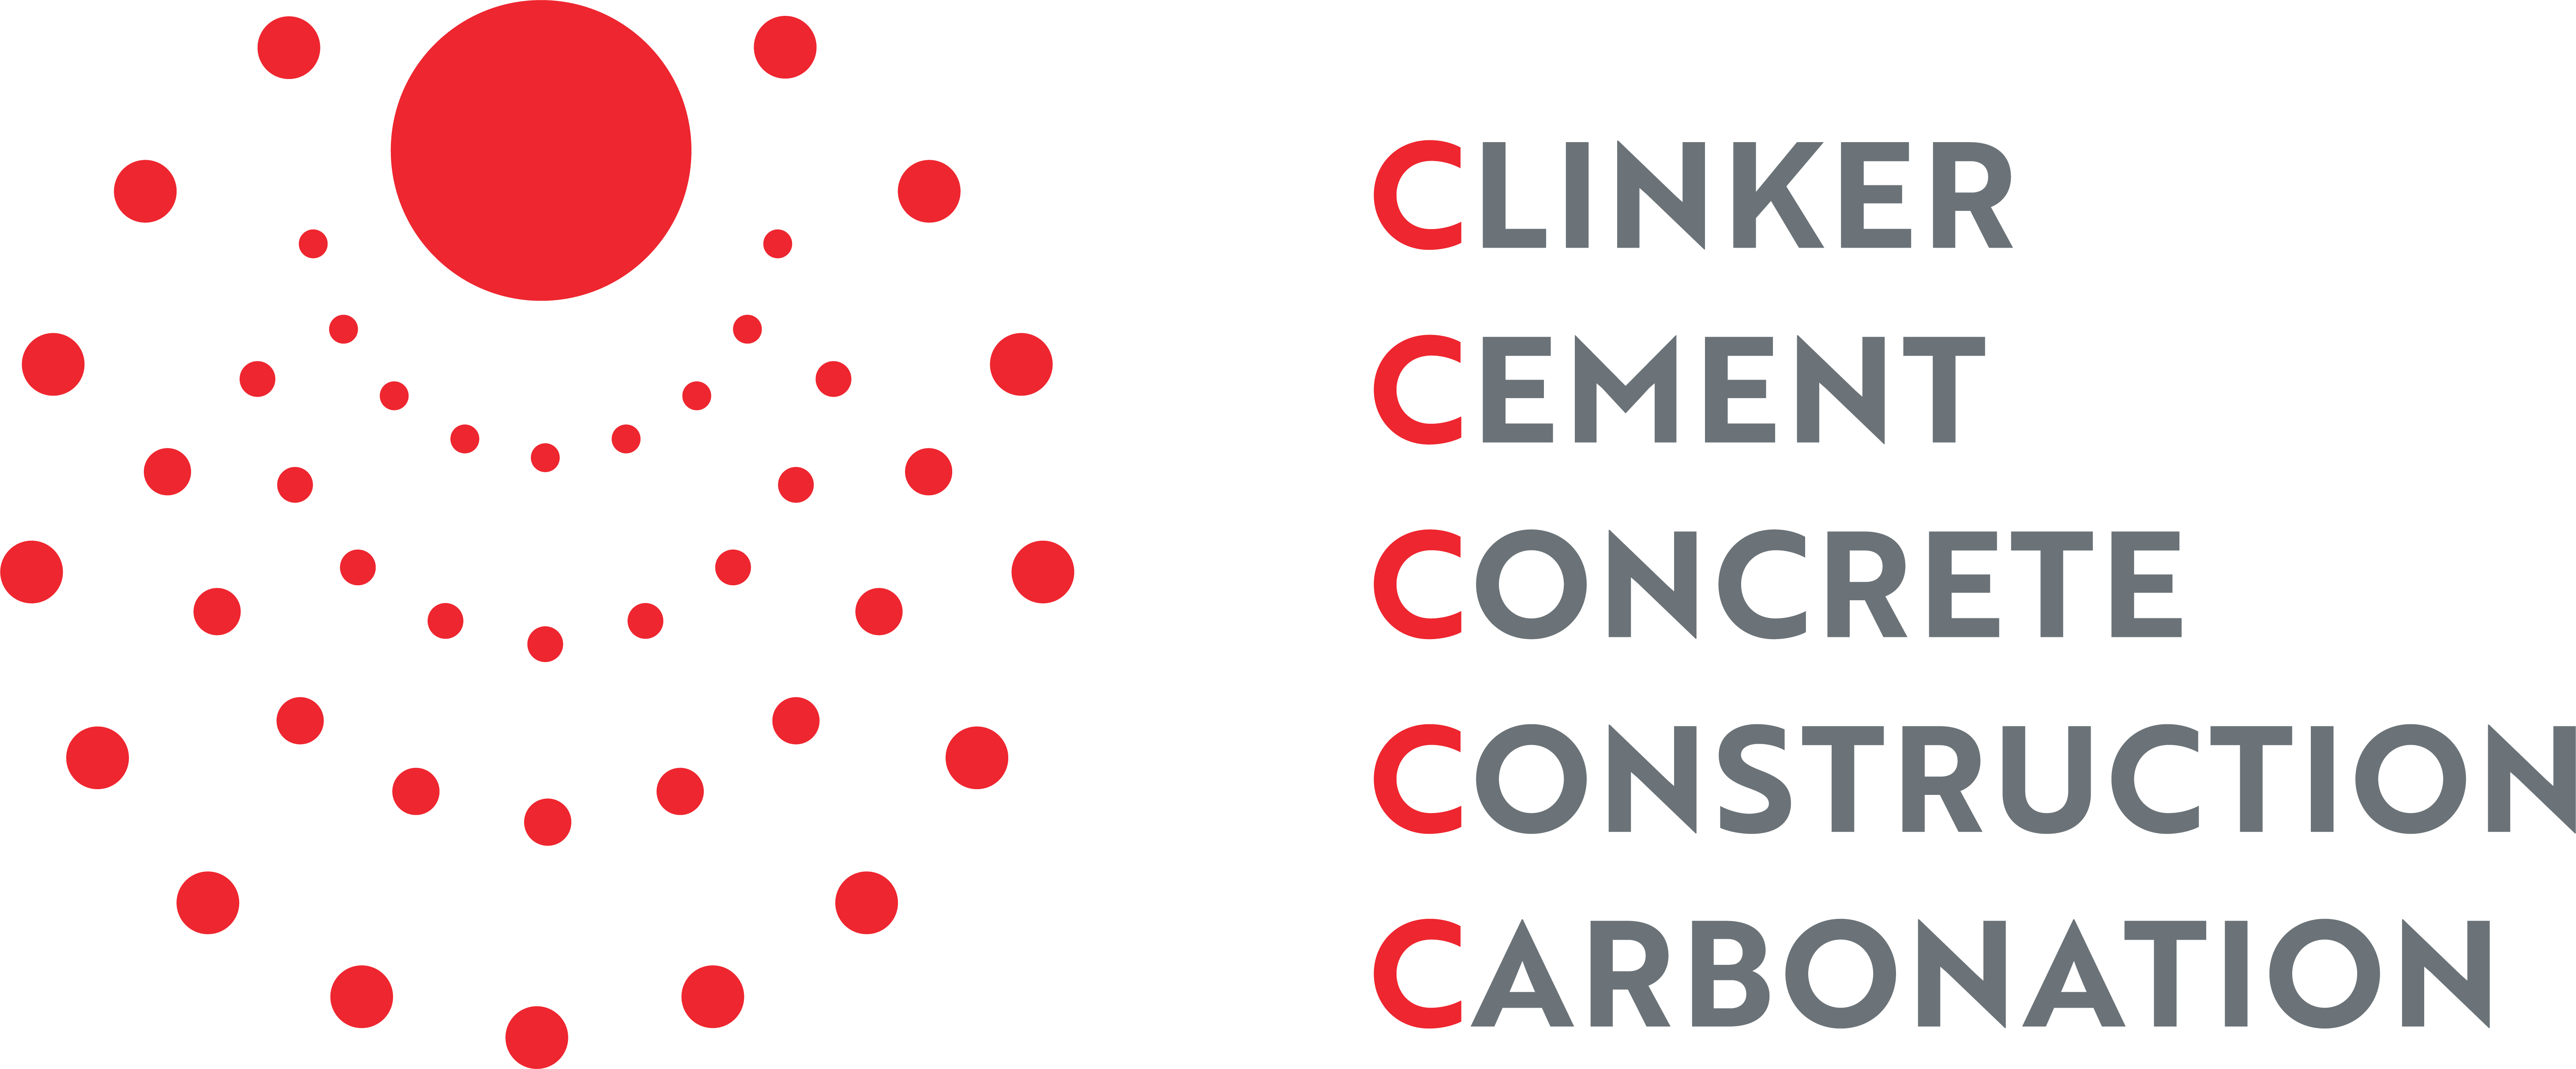 Clinker Cement Concrete Construction Carbonation